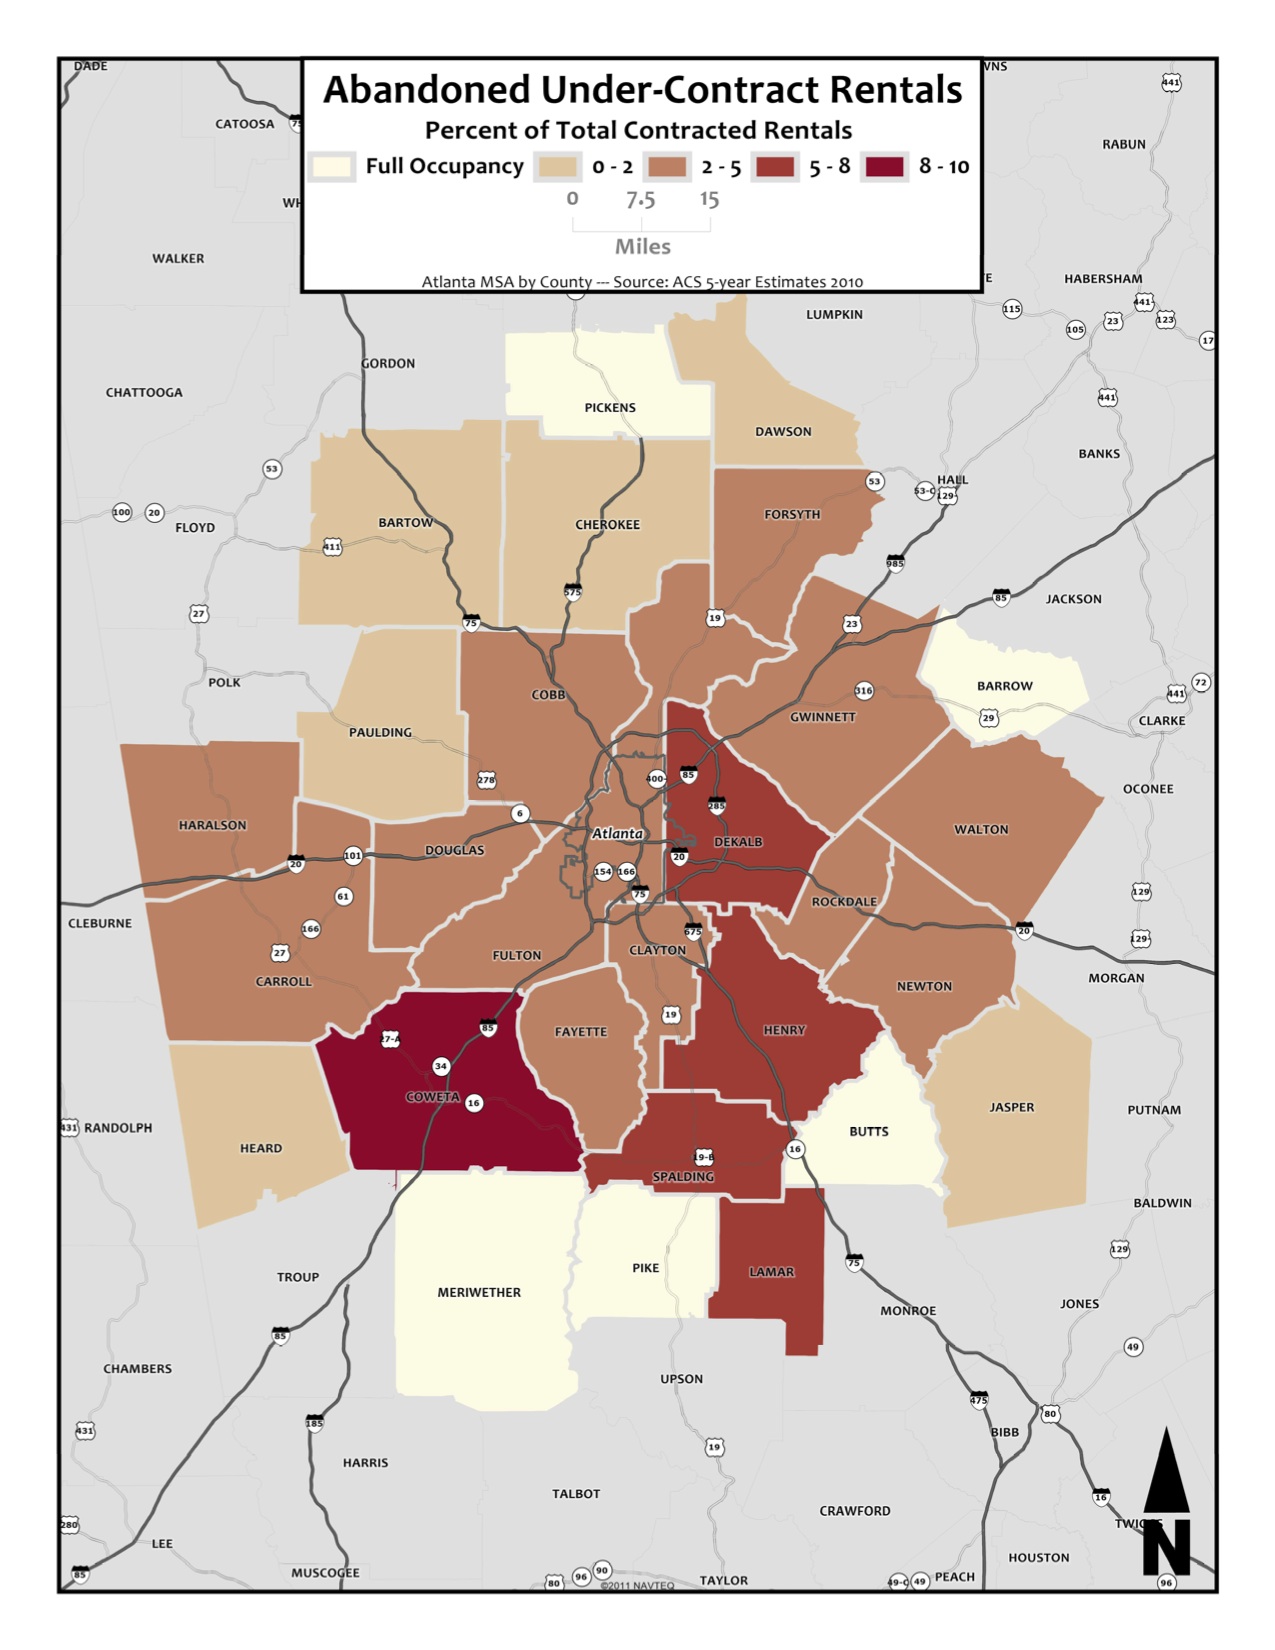 Abandoned Under-Contract Rentals – metro counties